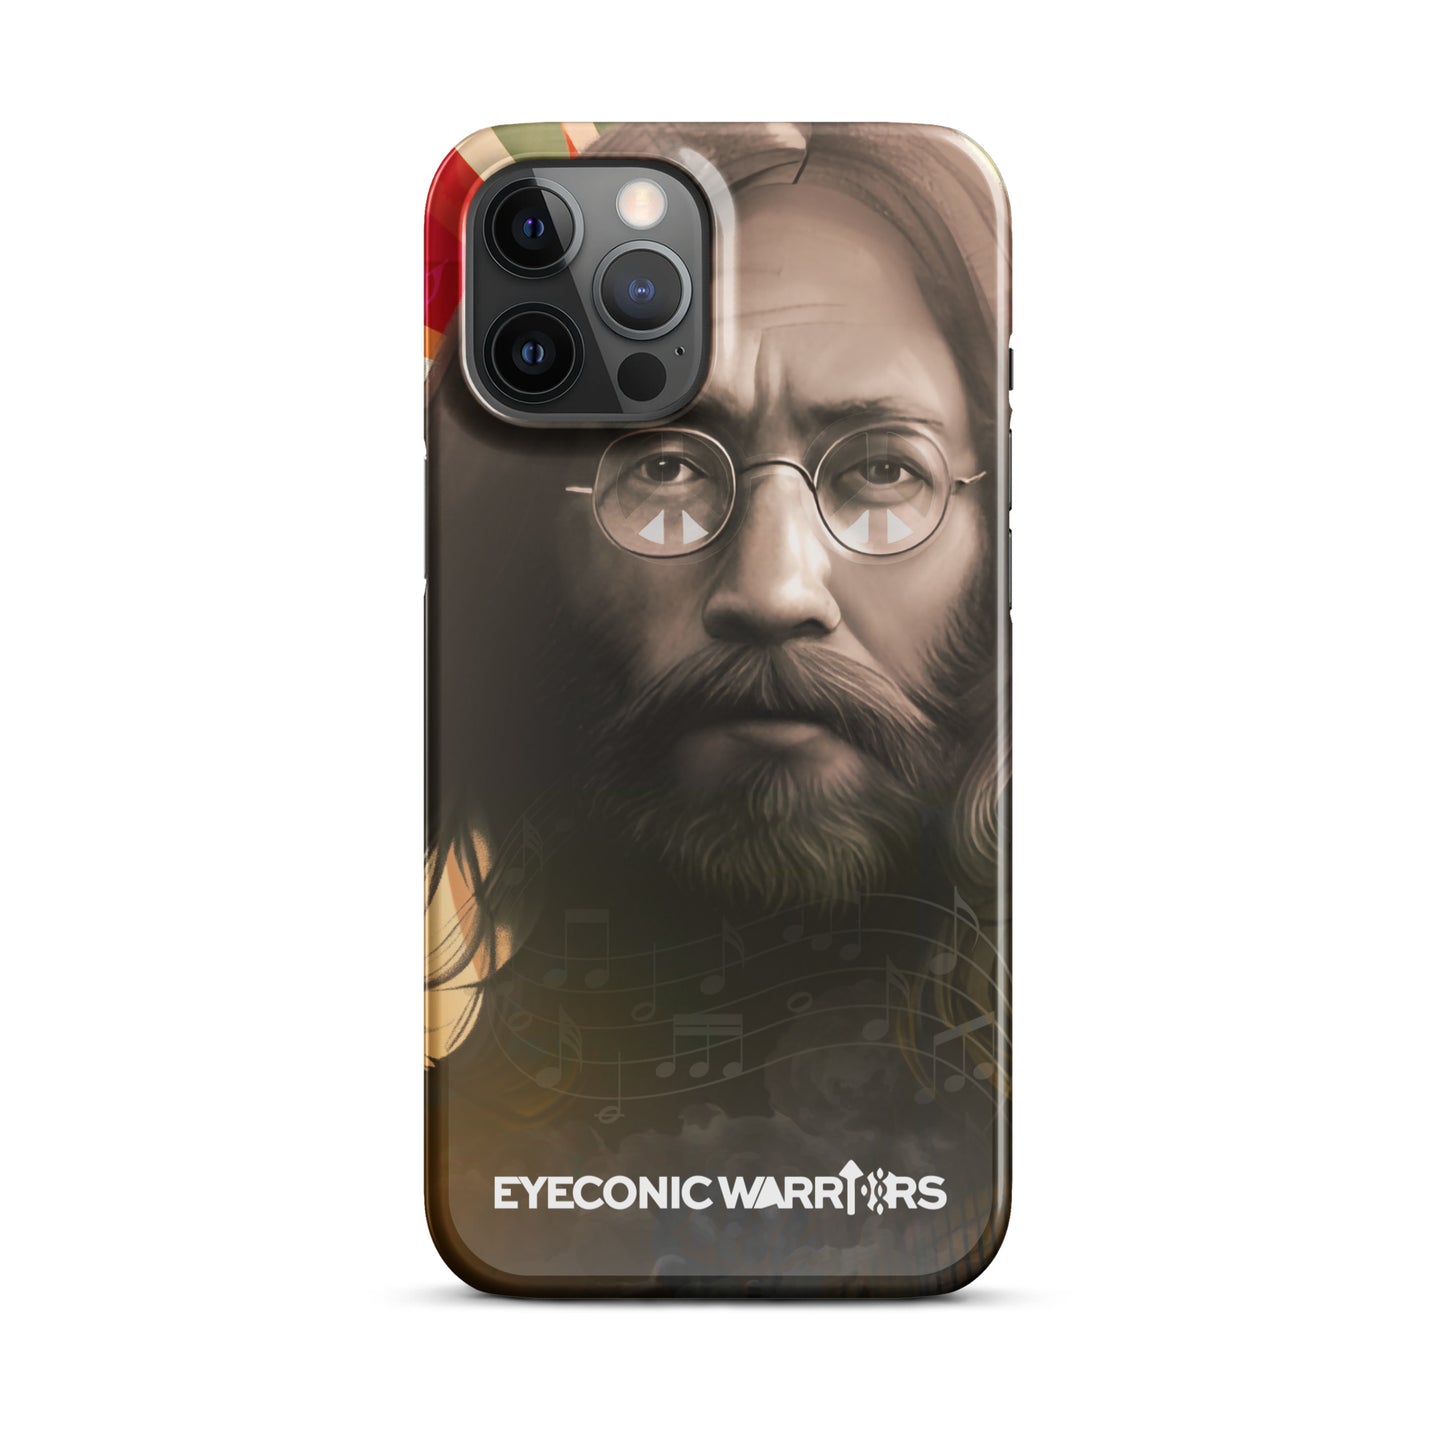 John Lennon Inspired Custom iPhone Case - Art for Change